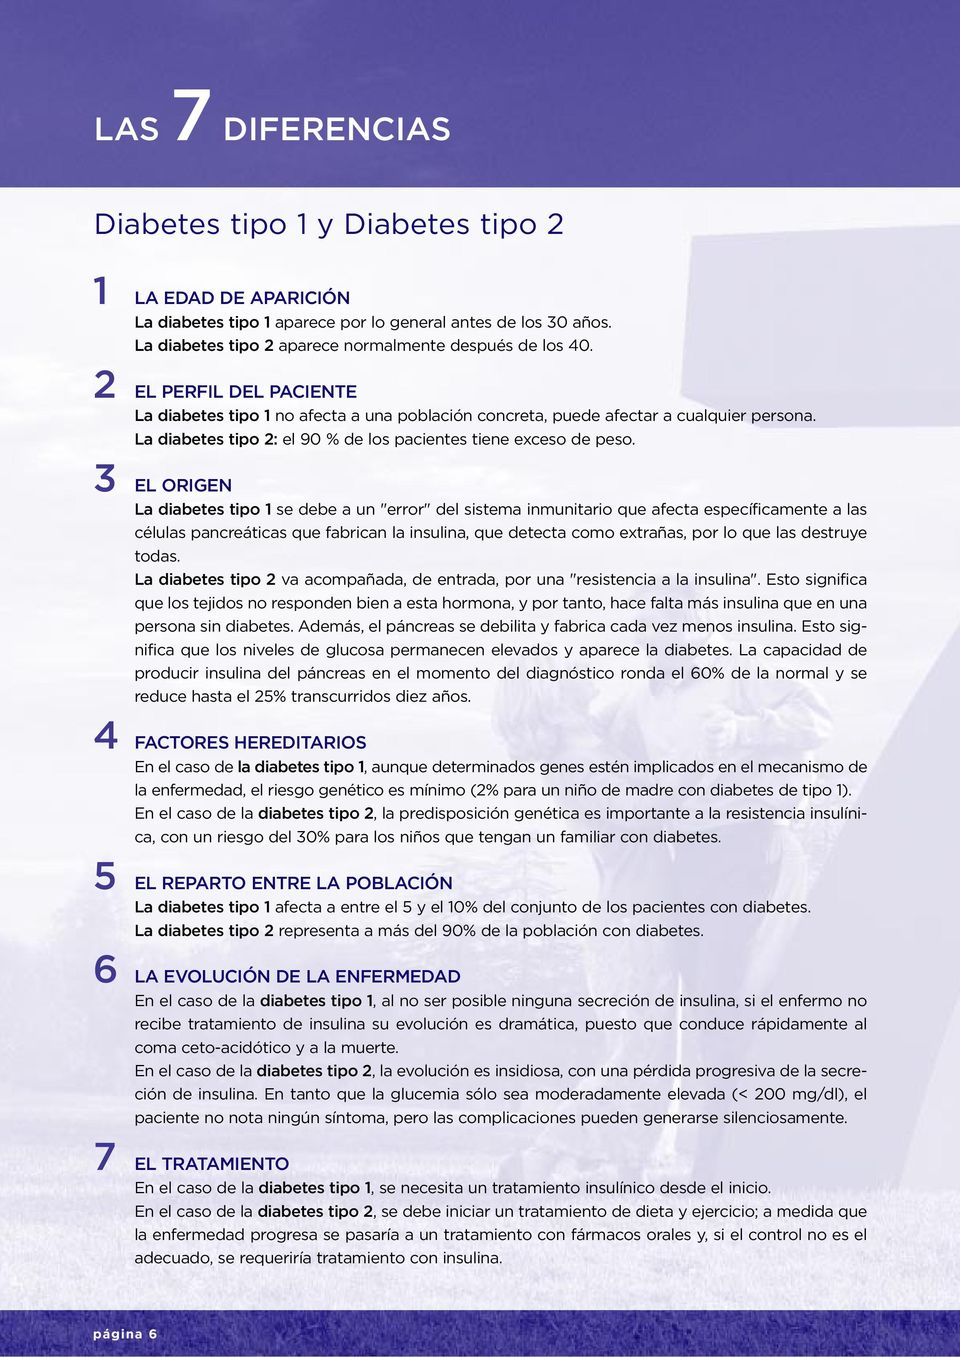 3 EL ORIGEN La diabetes tipo 1 se debe a un "error" del sistema inmunitario que afecta específicamente a las células pancreáticas que fabrican la insulina, que detecta como extrañas, por lo que las